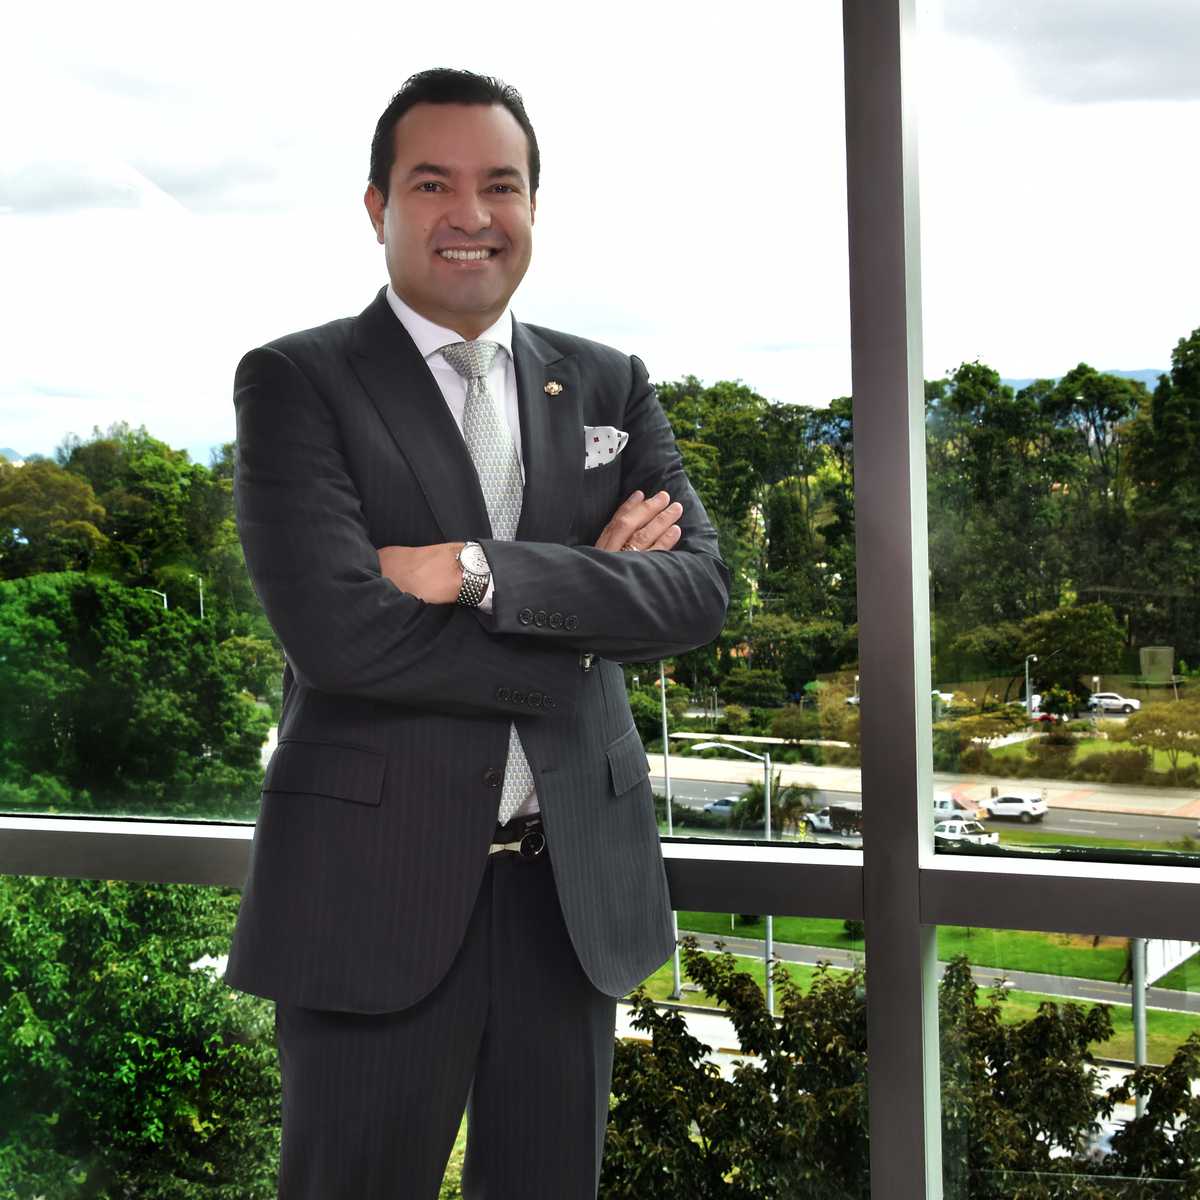 Didier Alberto Tavera Amado.
Director de Fededepartamentos